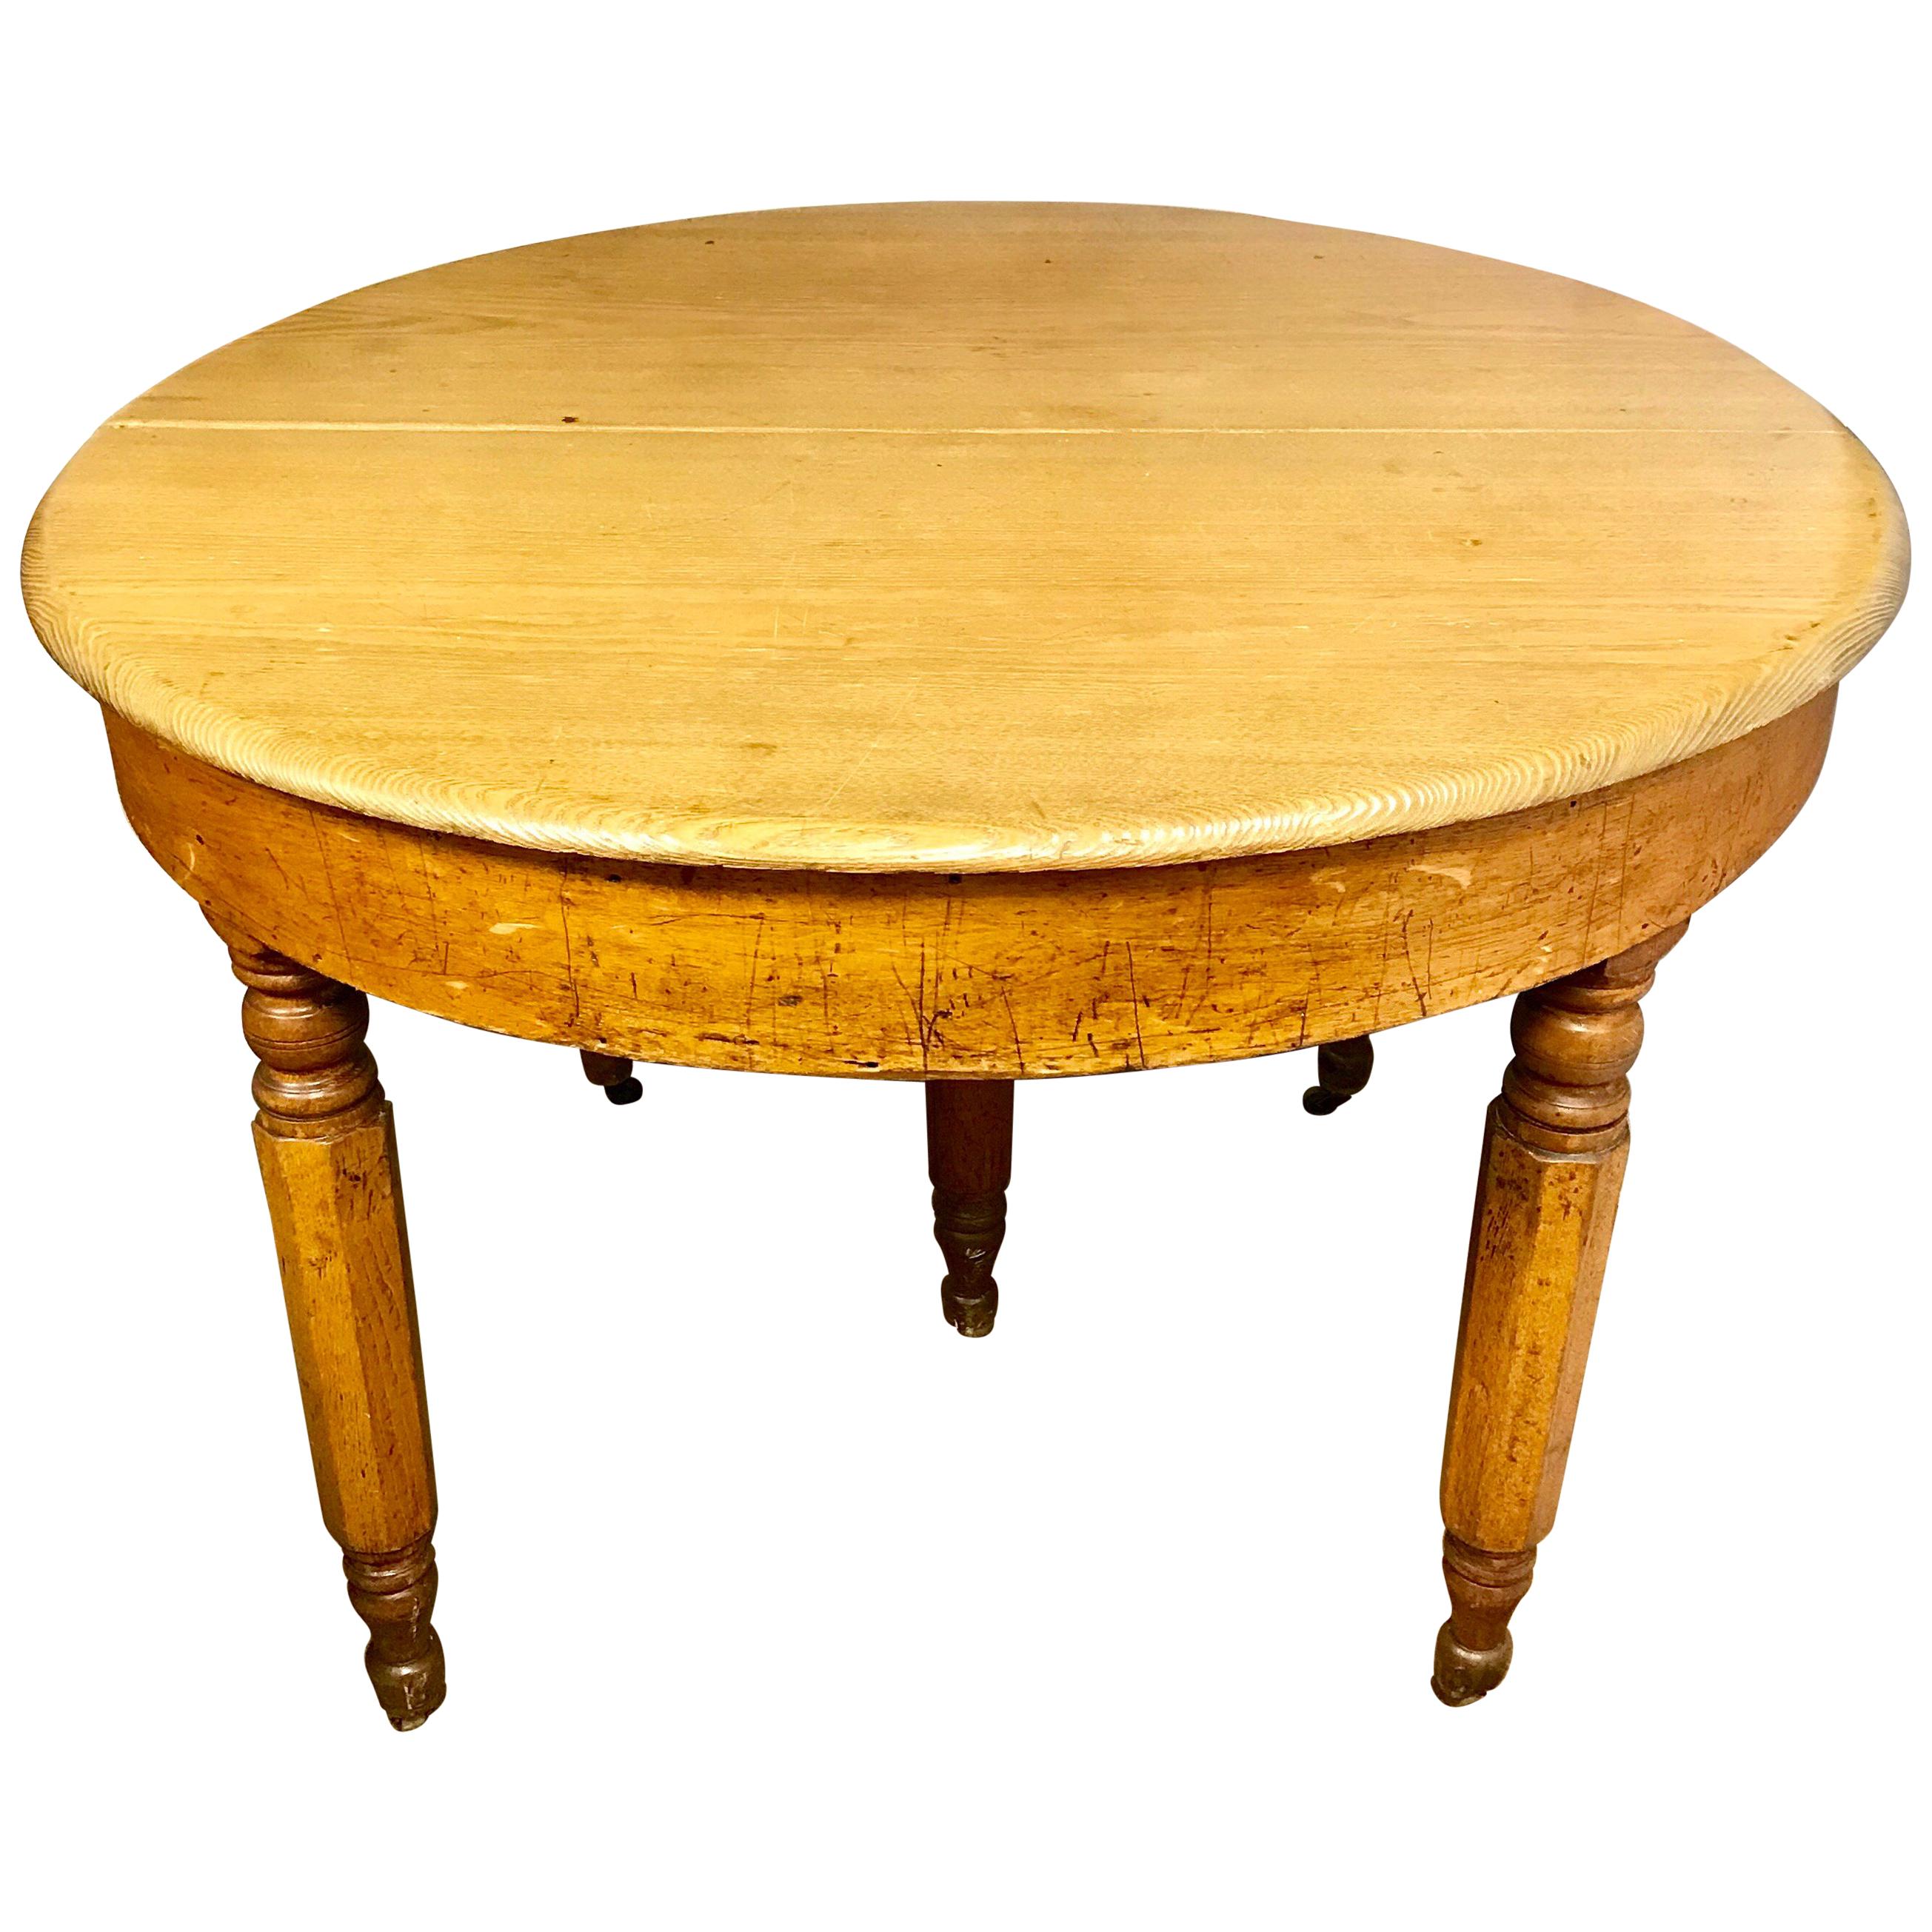 Antique Rustic Round Pine Table